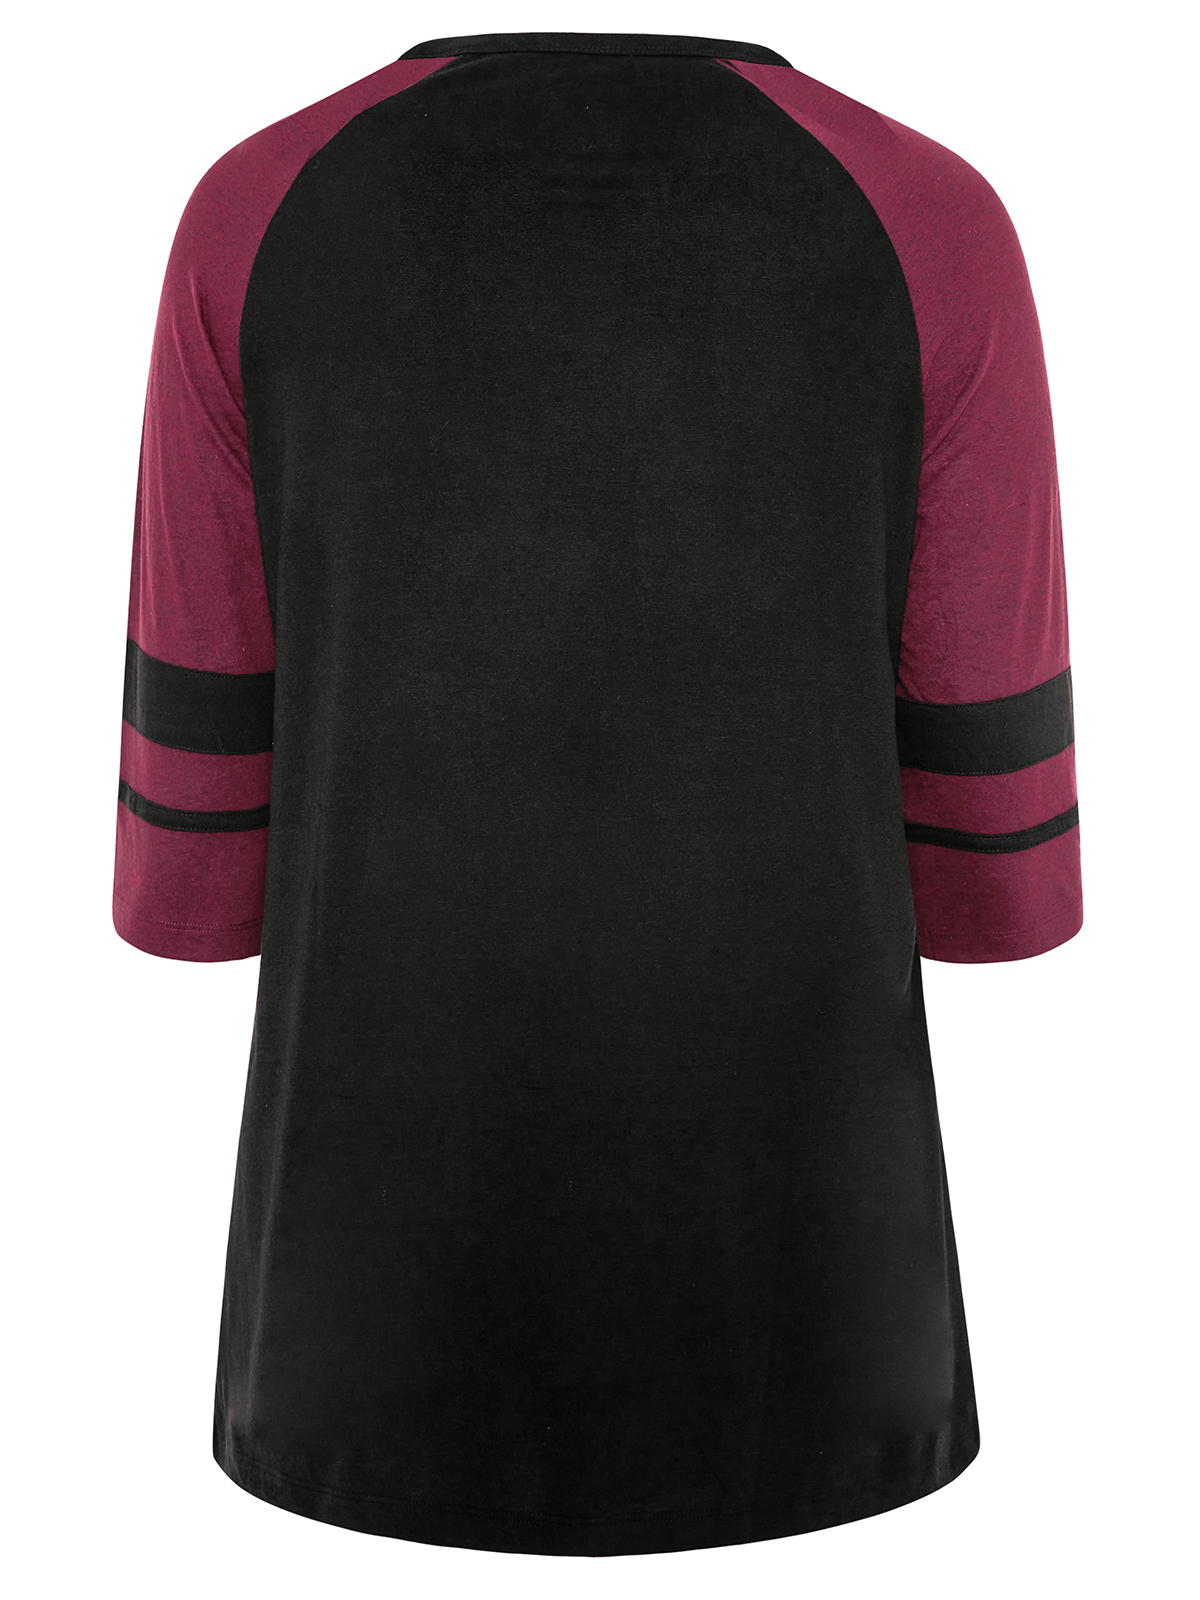 CURVE - - Curve BLACK/PLUM Color Block T-Shirt - Plus Size 16 to 38/40